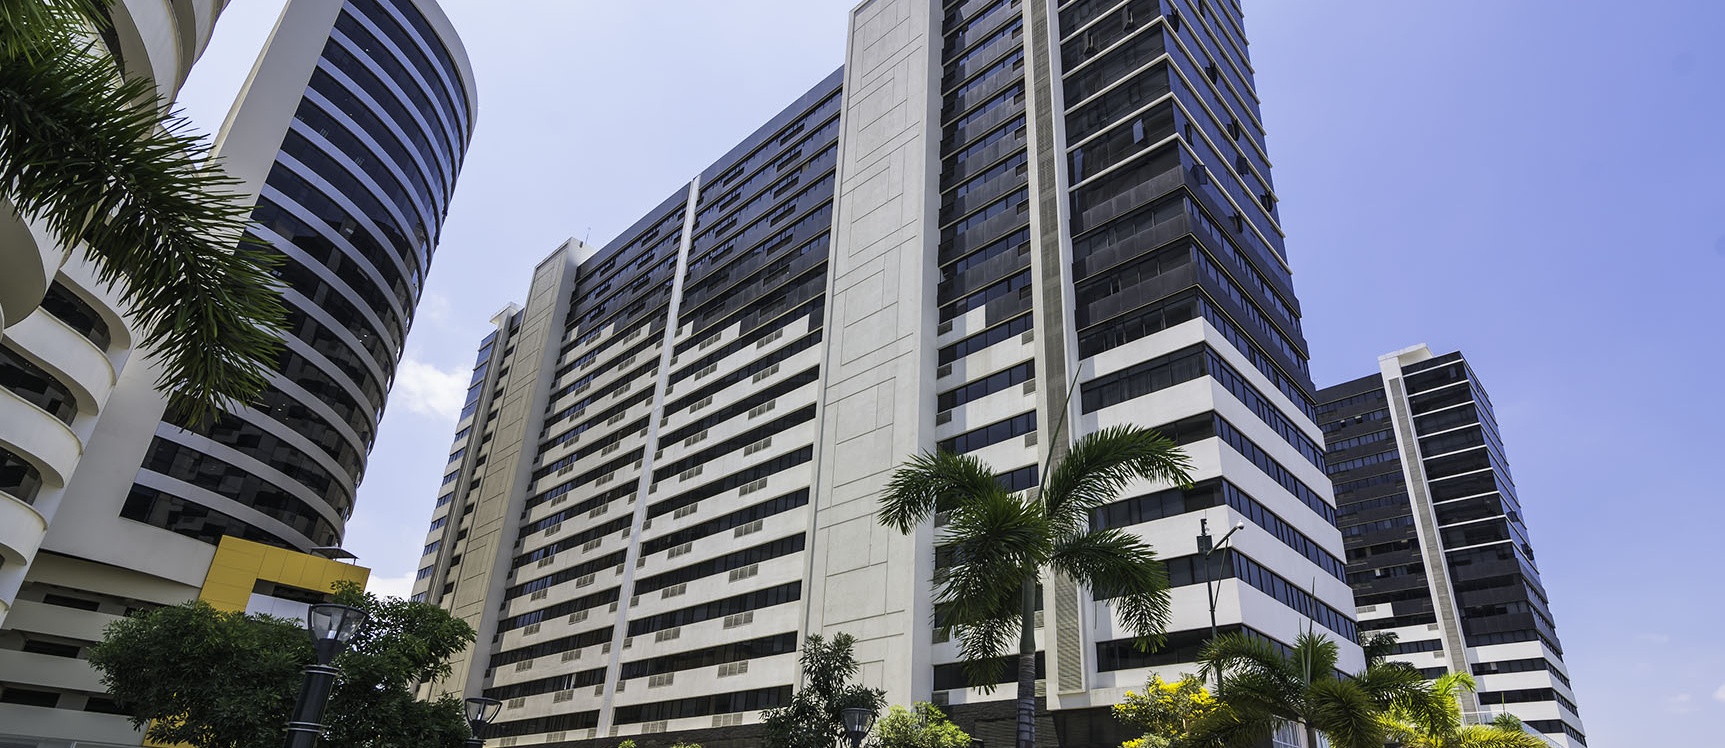 GeoBienes - Departamento en alquiler Edificio Bellini II,  Puerto Santa Ana  - Plusvalia Guayaquil Casas de venta y alquiler Inmobiliaria Ecuador